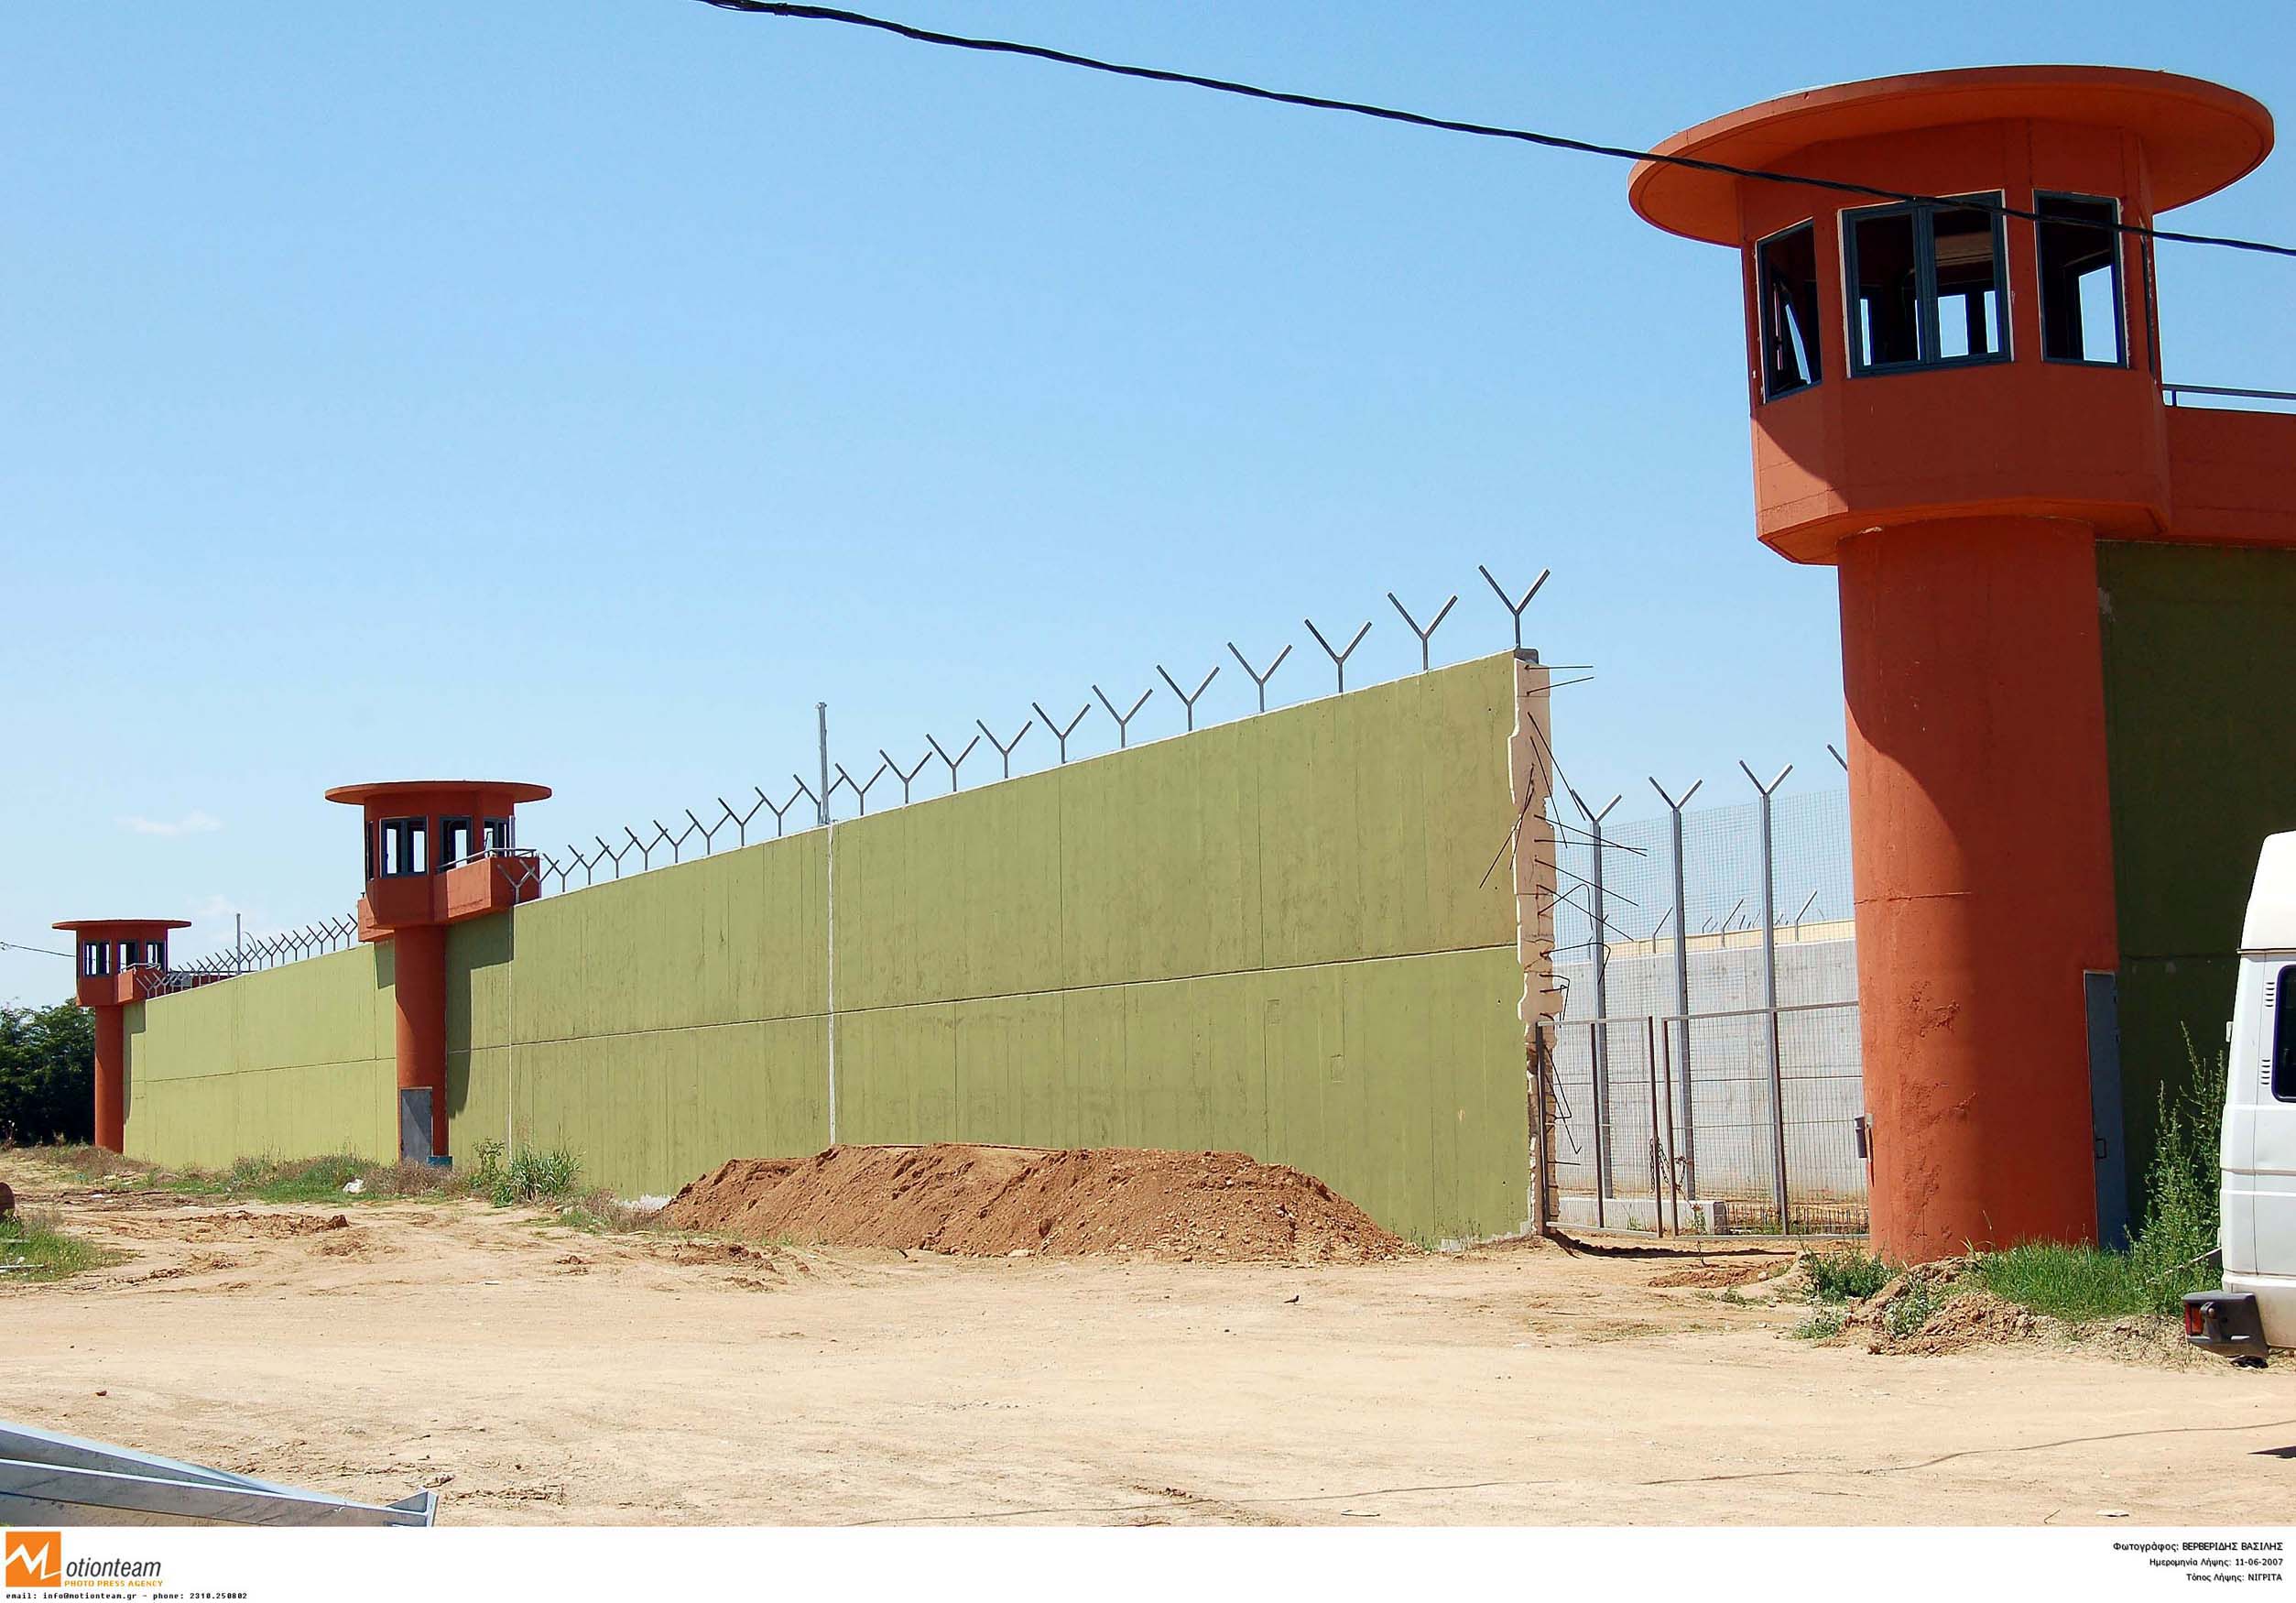 Φυλακές Νιγρίτας: Πρώην διευθυντής είχε βάλει κοριό για να παρακολουθεί τους συναδέλφους του